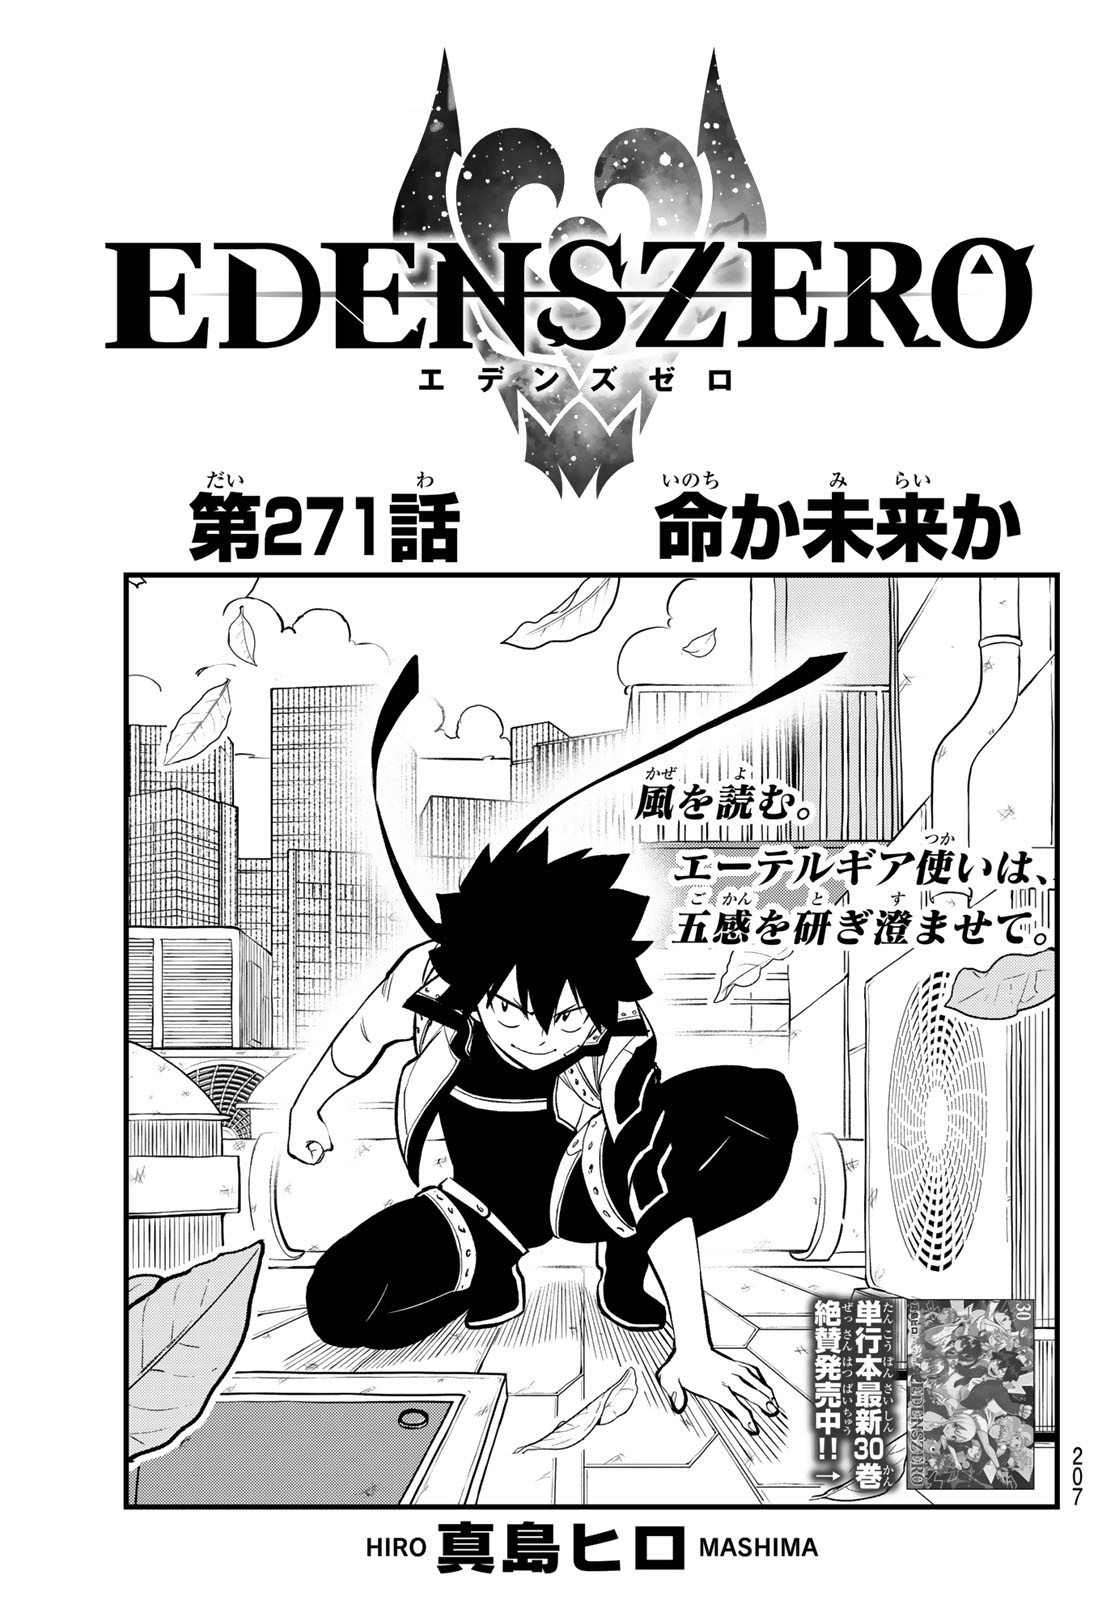 Chapter 271 | Edens Zero Wiki | Fandom